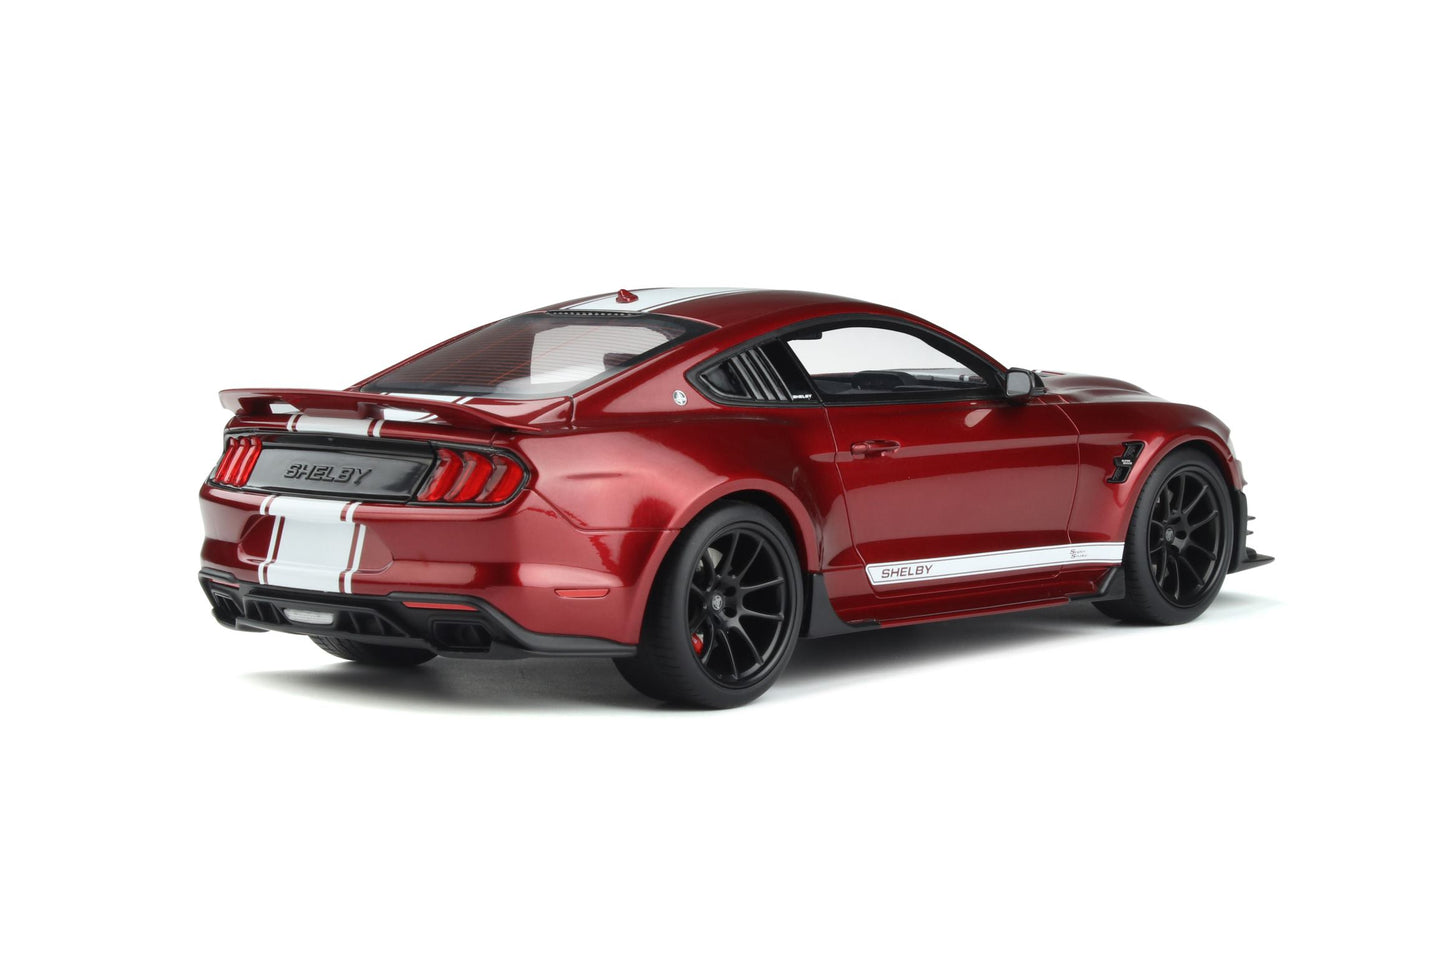 1:18 Ford Mustang Shelby Super Snake Coupé, rødmetallic med hvid stribe, GT Spirit, GT397, lev. DEC 2022, lukket model, limited